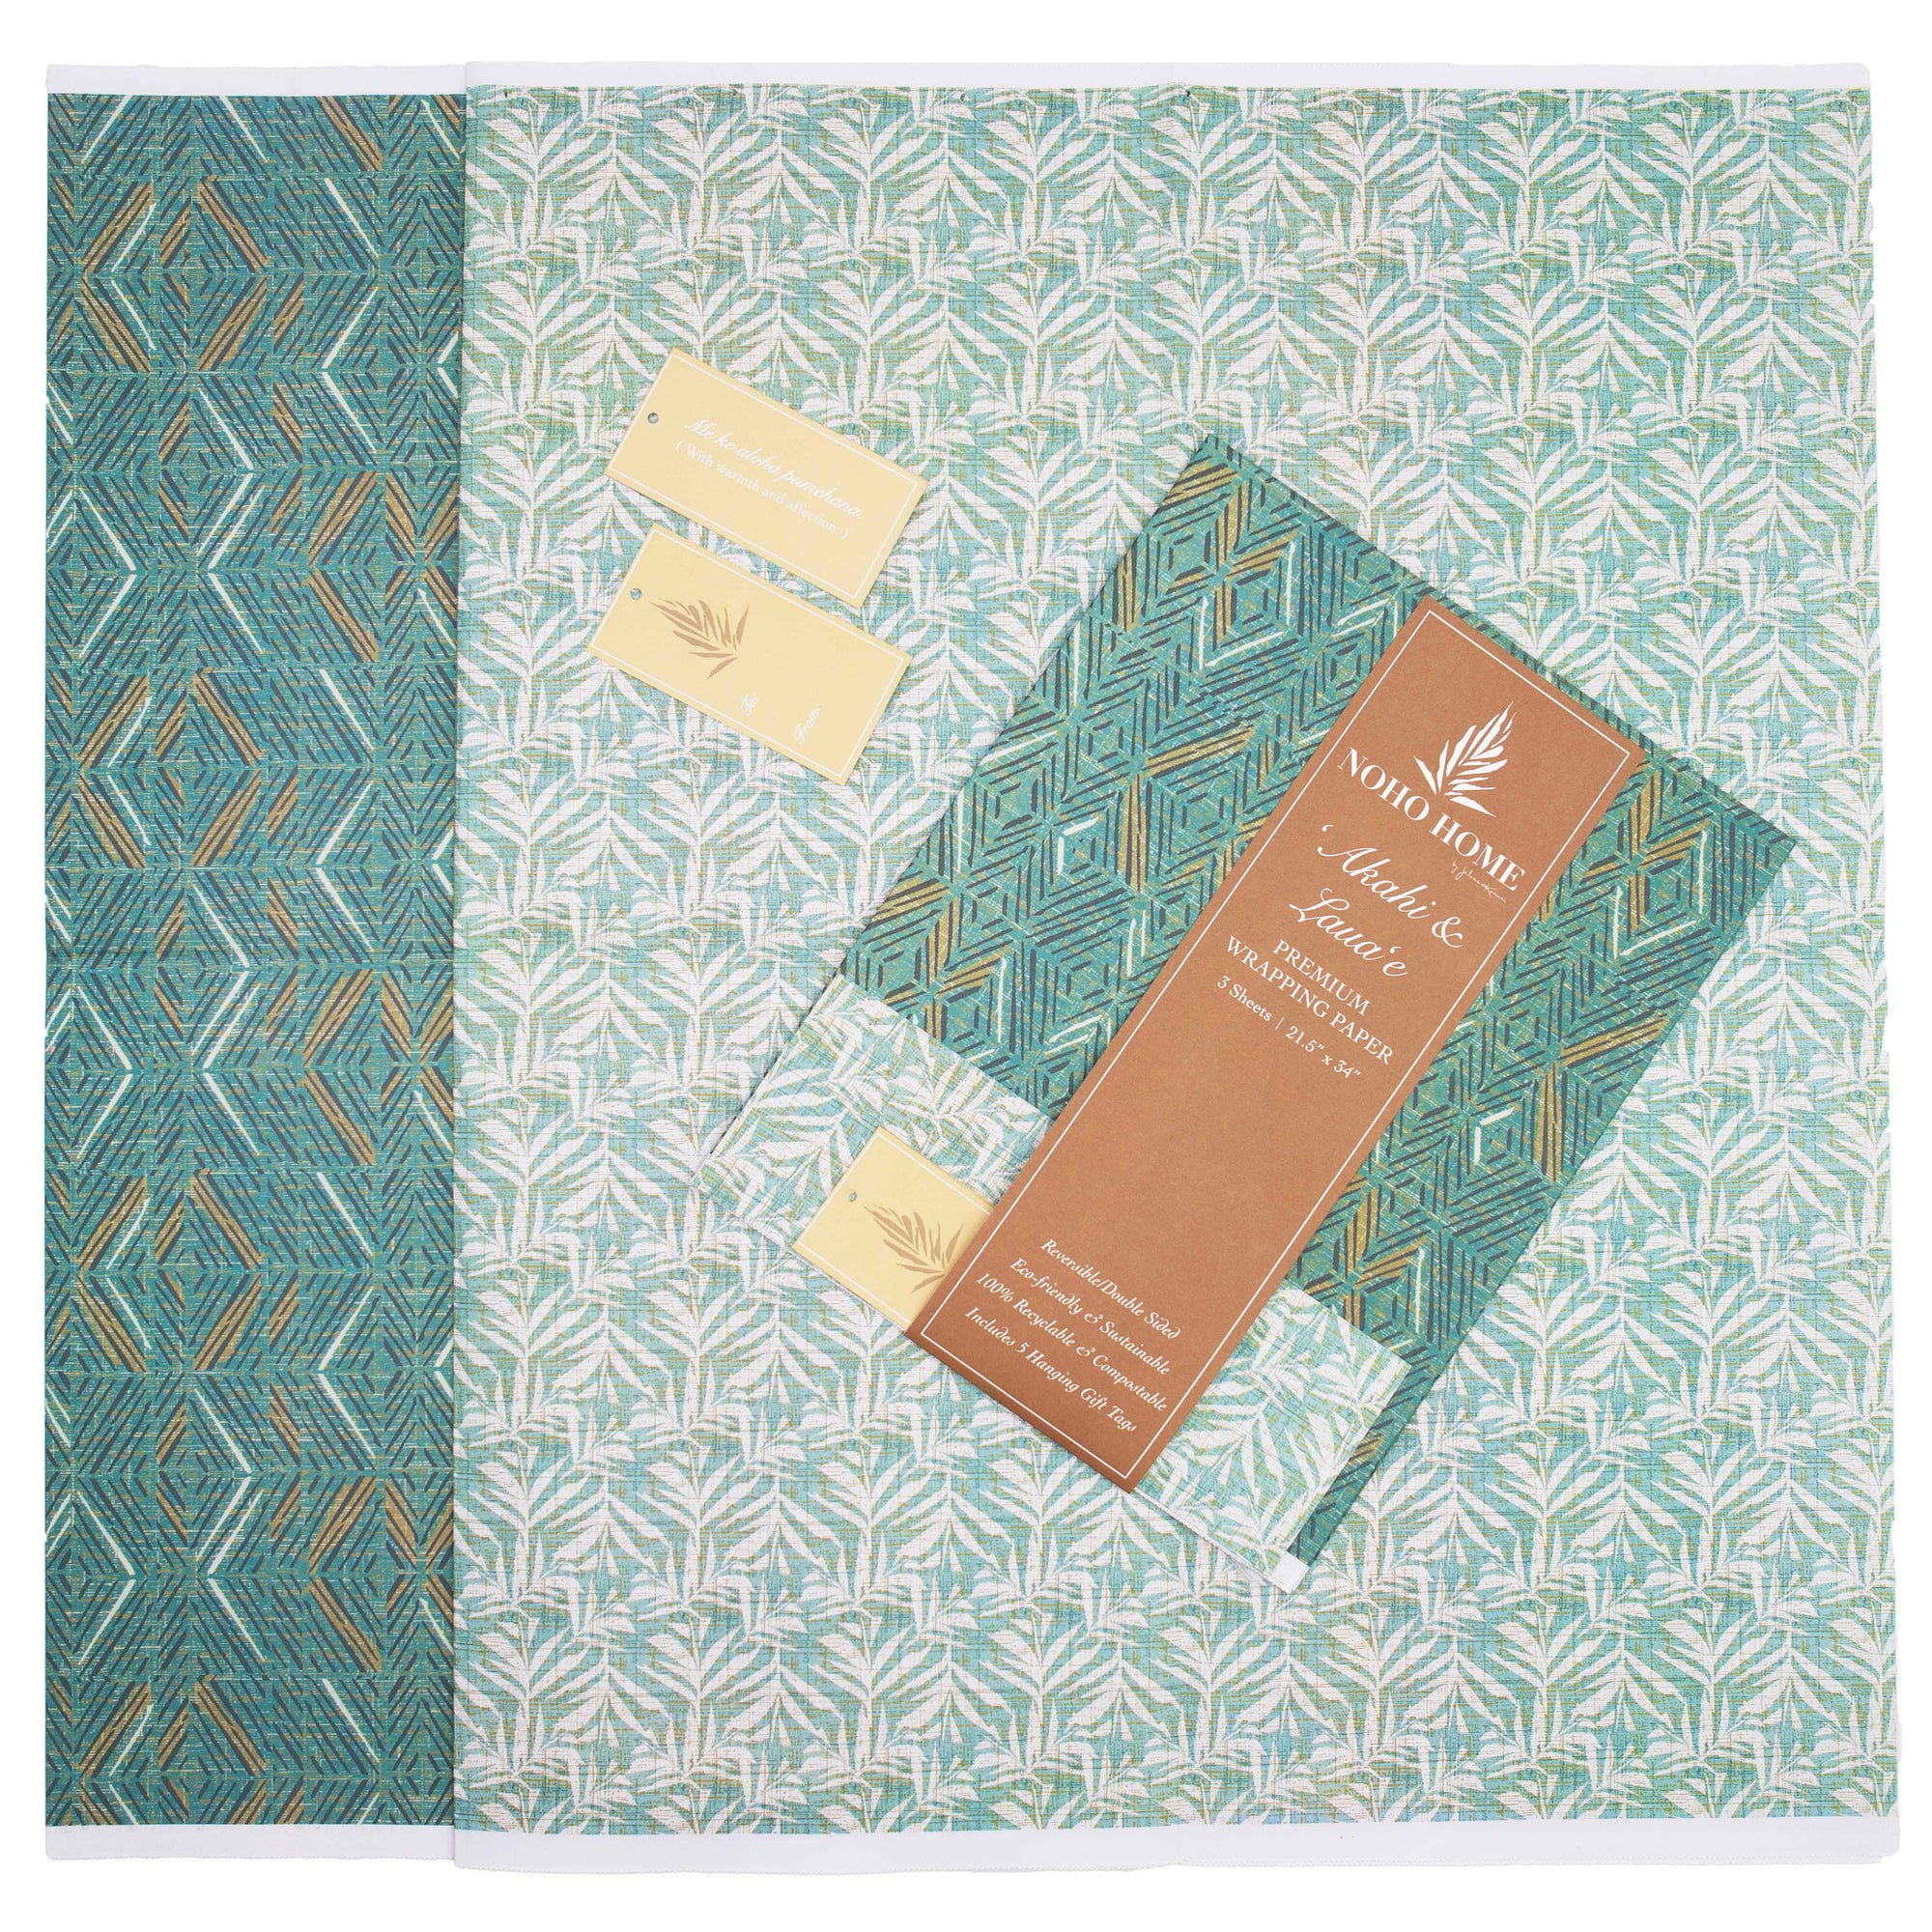 Pop-Up Mākeke - Noho Home - ʻAkahi & Lauaʻe Reversible Wrapping Paper - Laid Flat